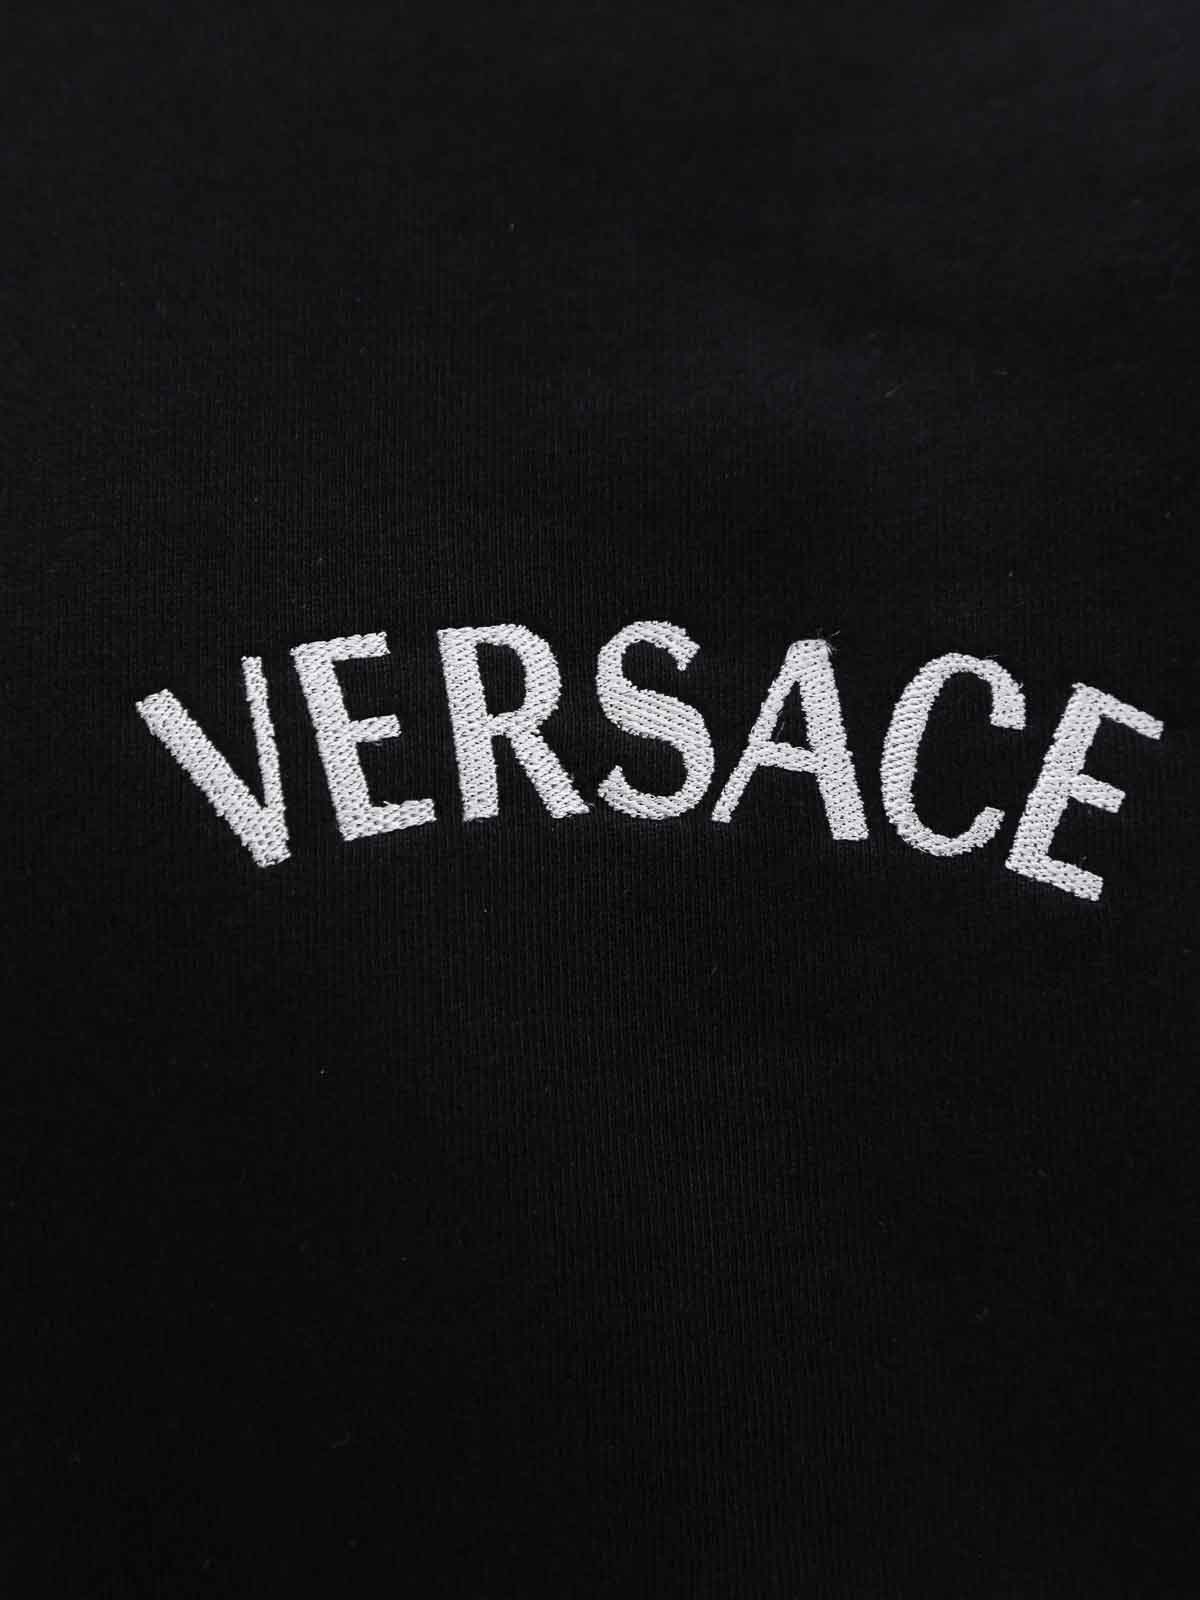 Shop Versace Sudadera - Negro In Black